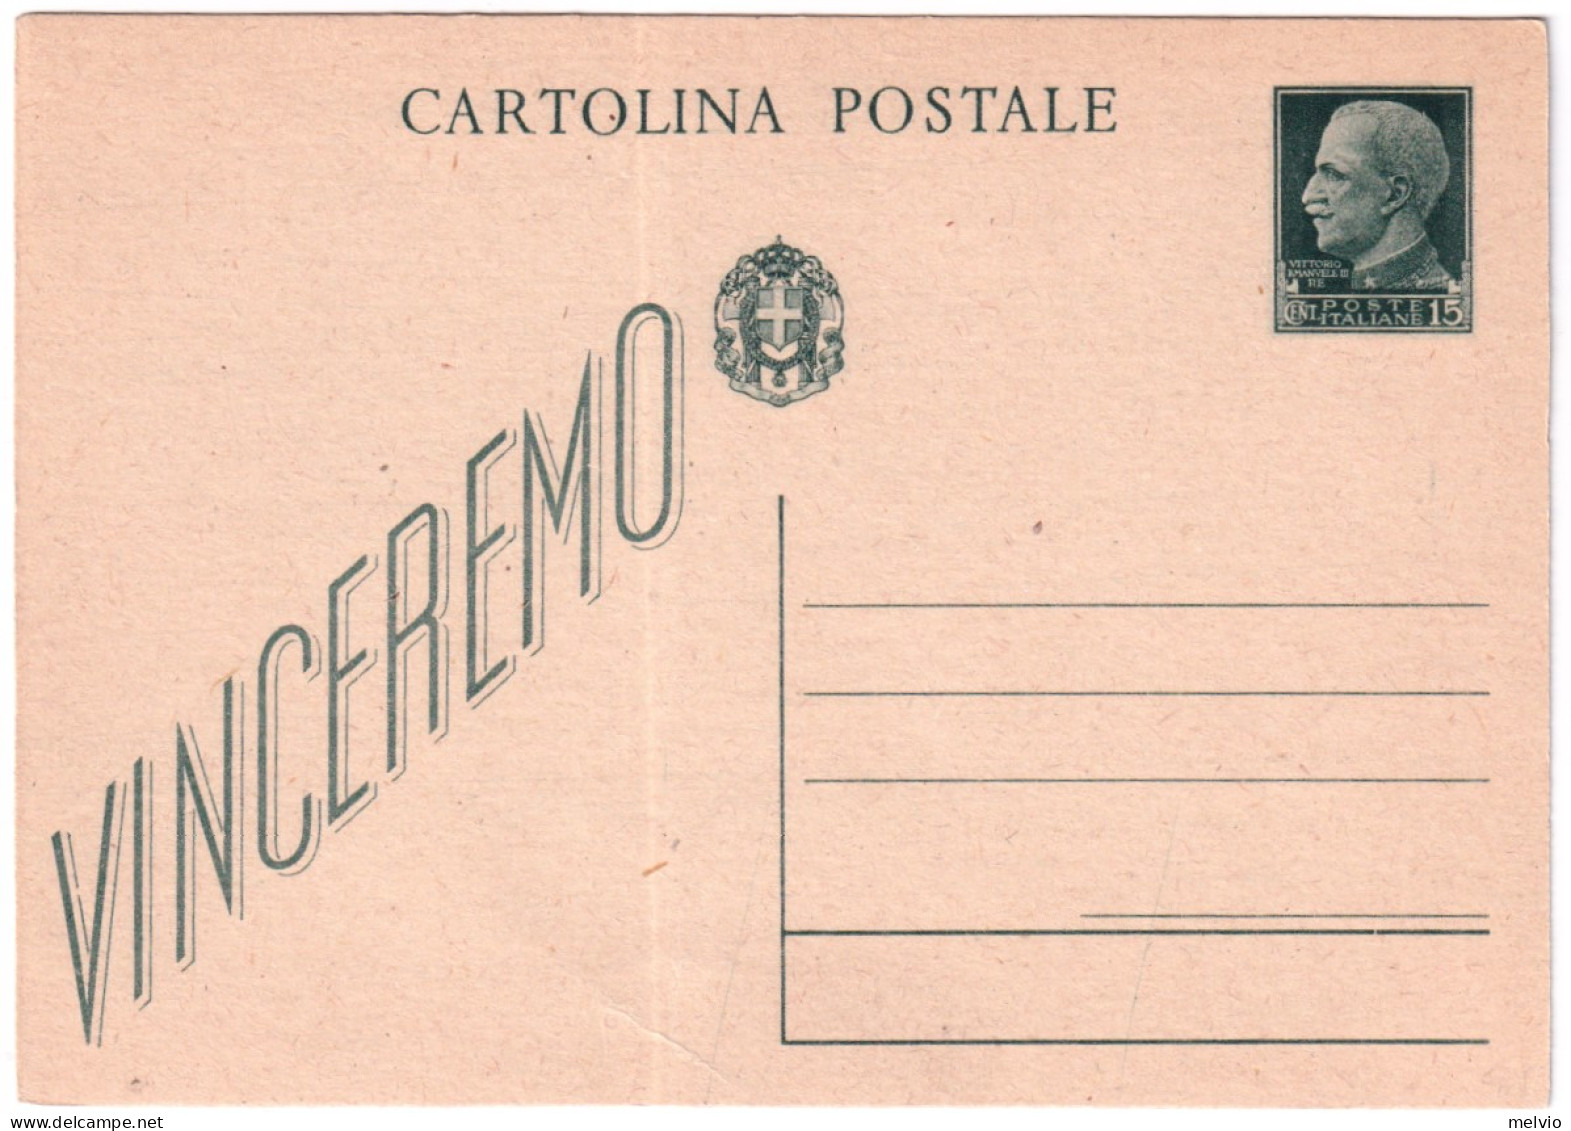 1942-cartolina Postale 15c. Vinceremo Formato Piccolo Cat.Filagrano C 97 - Stamped Stationery